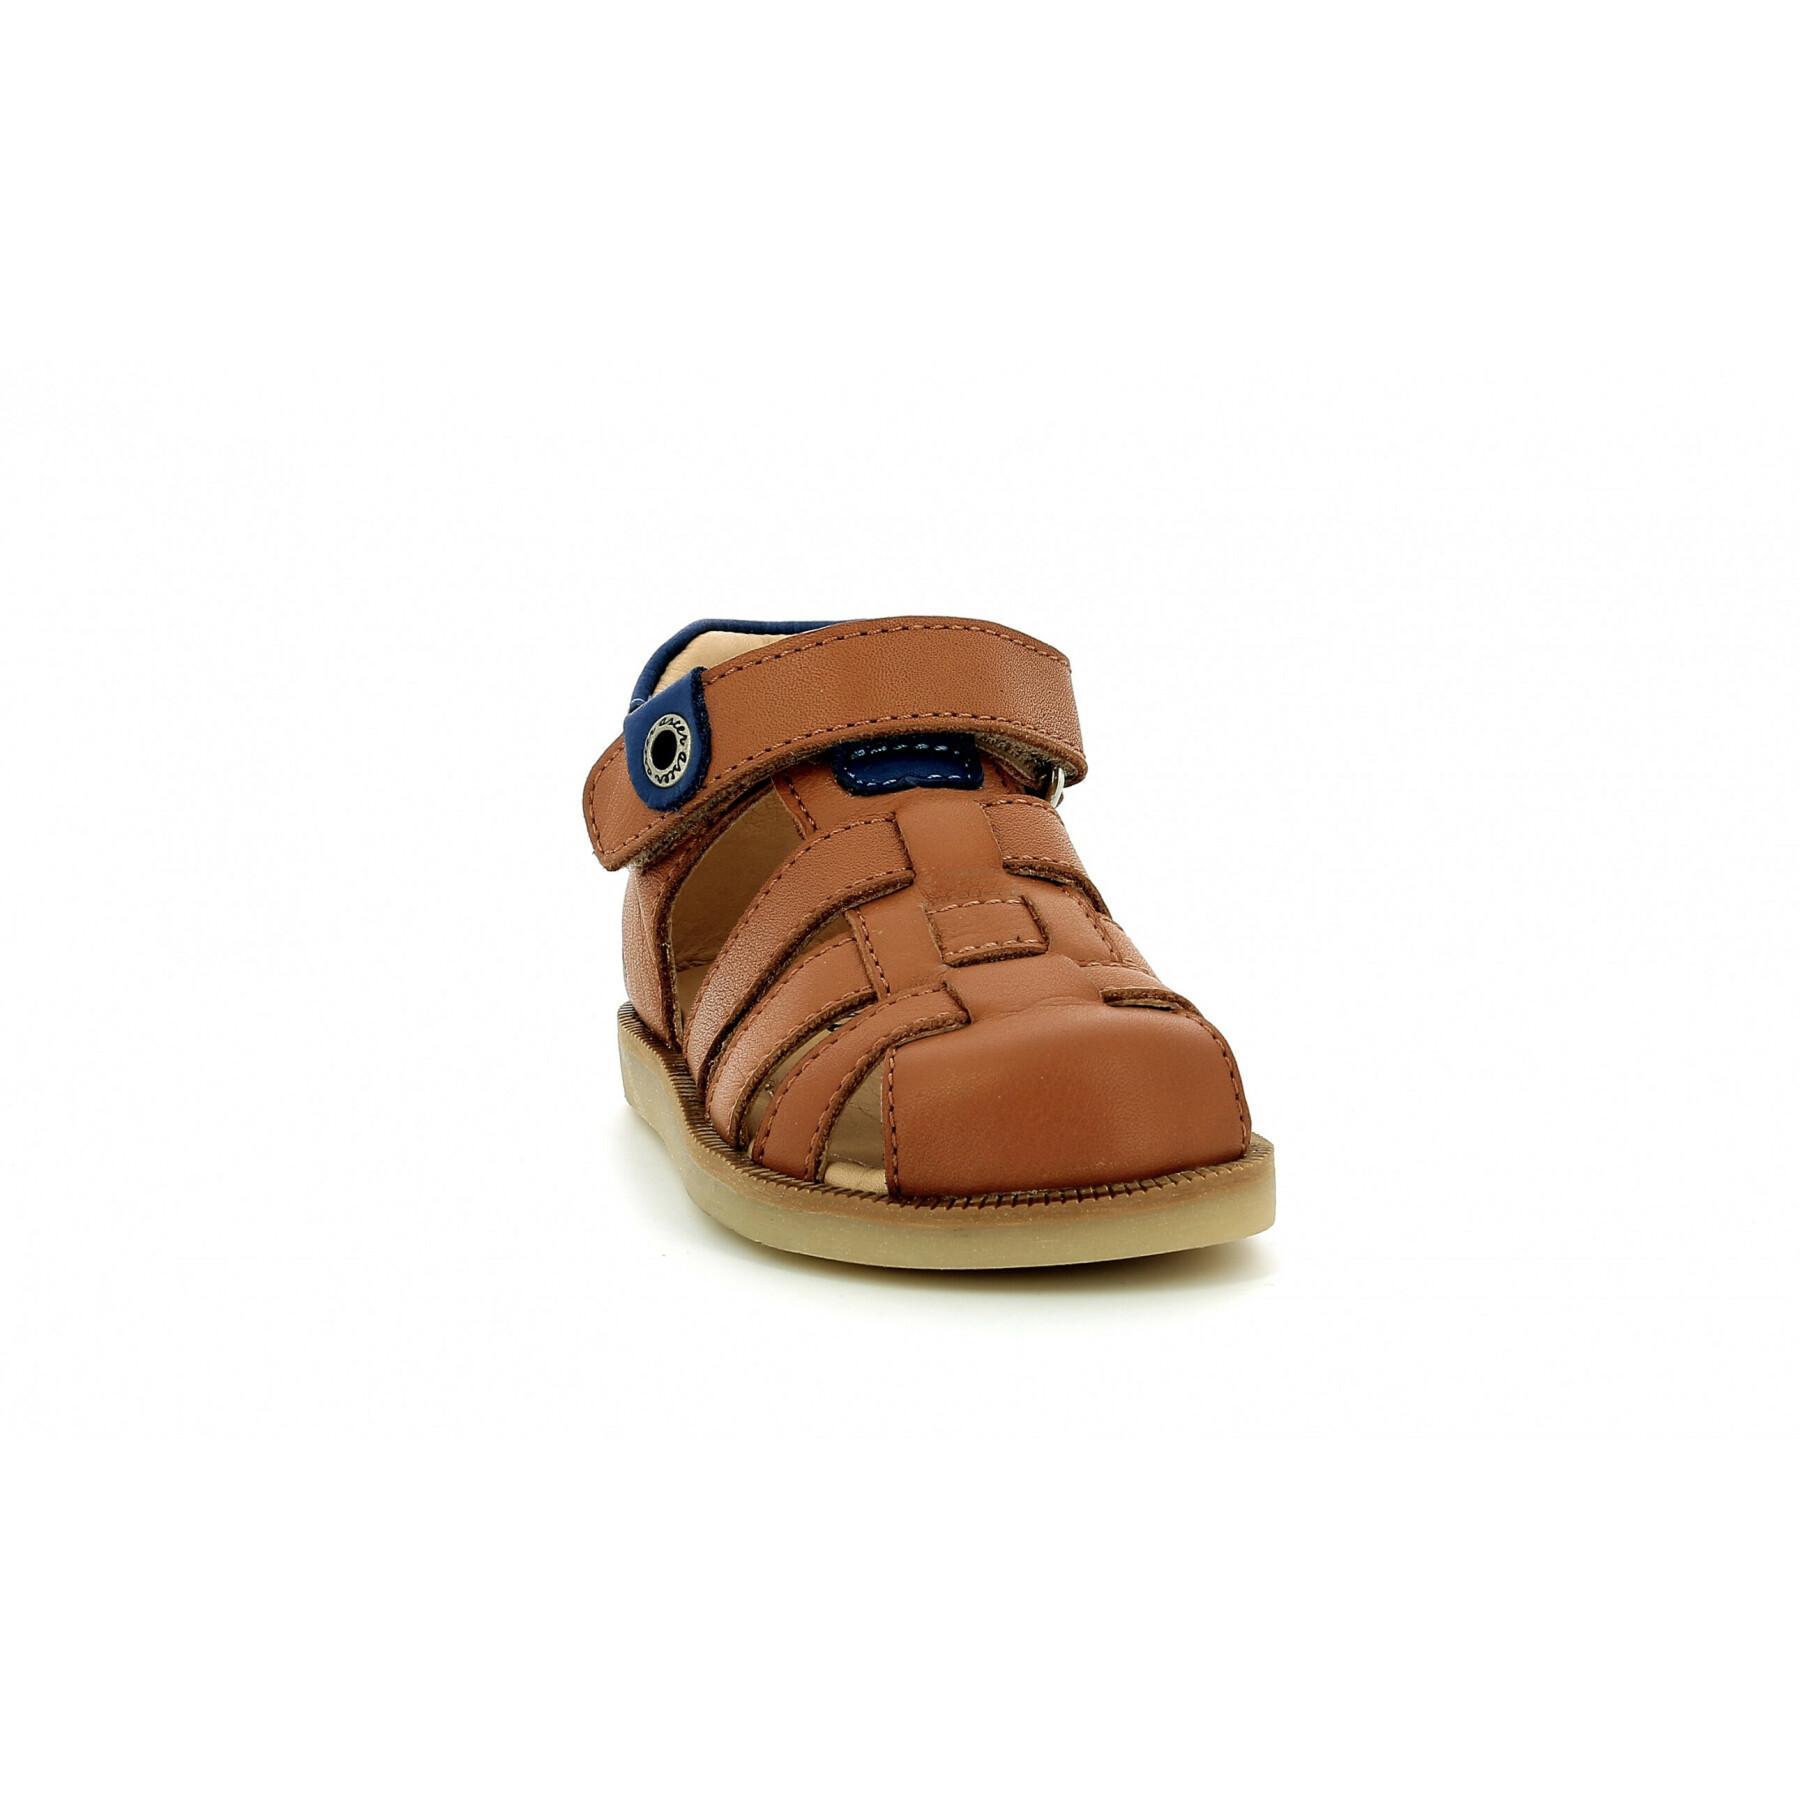 Baby boy sandals Aster Nitrop